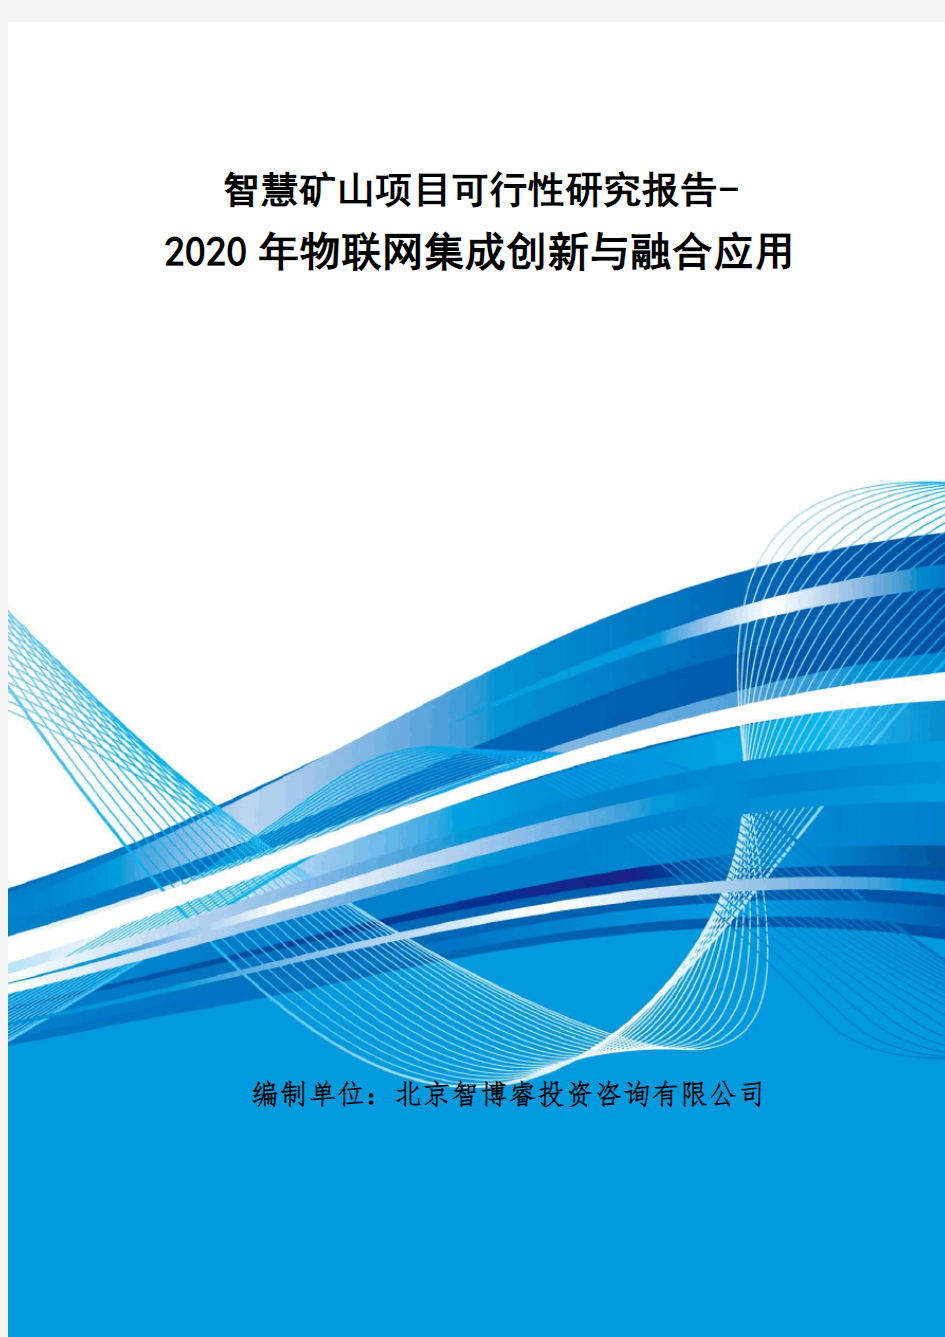 智慧矿山项目可行性研究报告-2020年物联网集成创新与融合应用